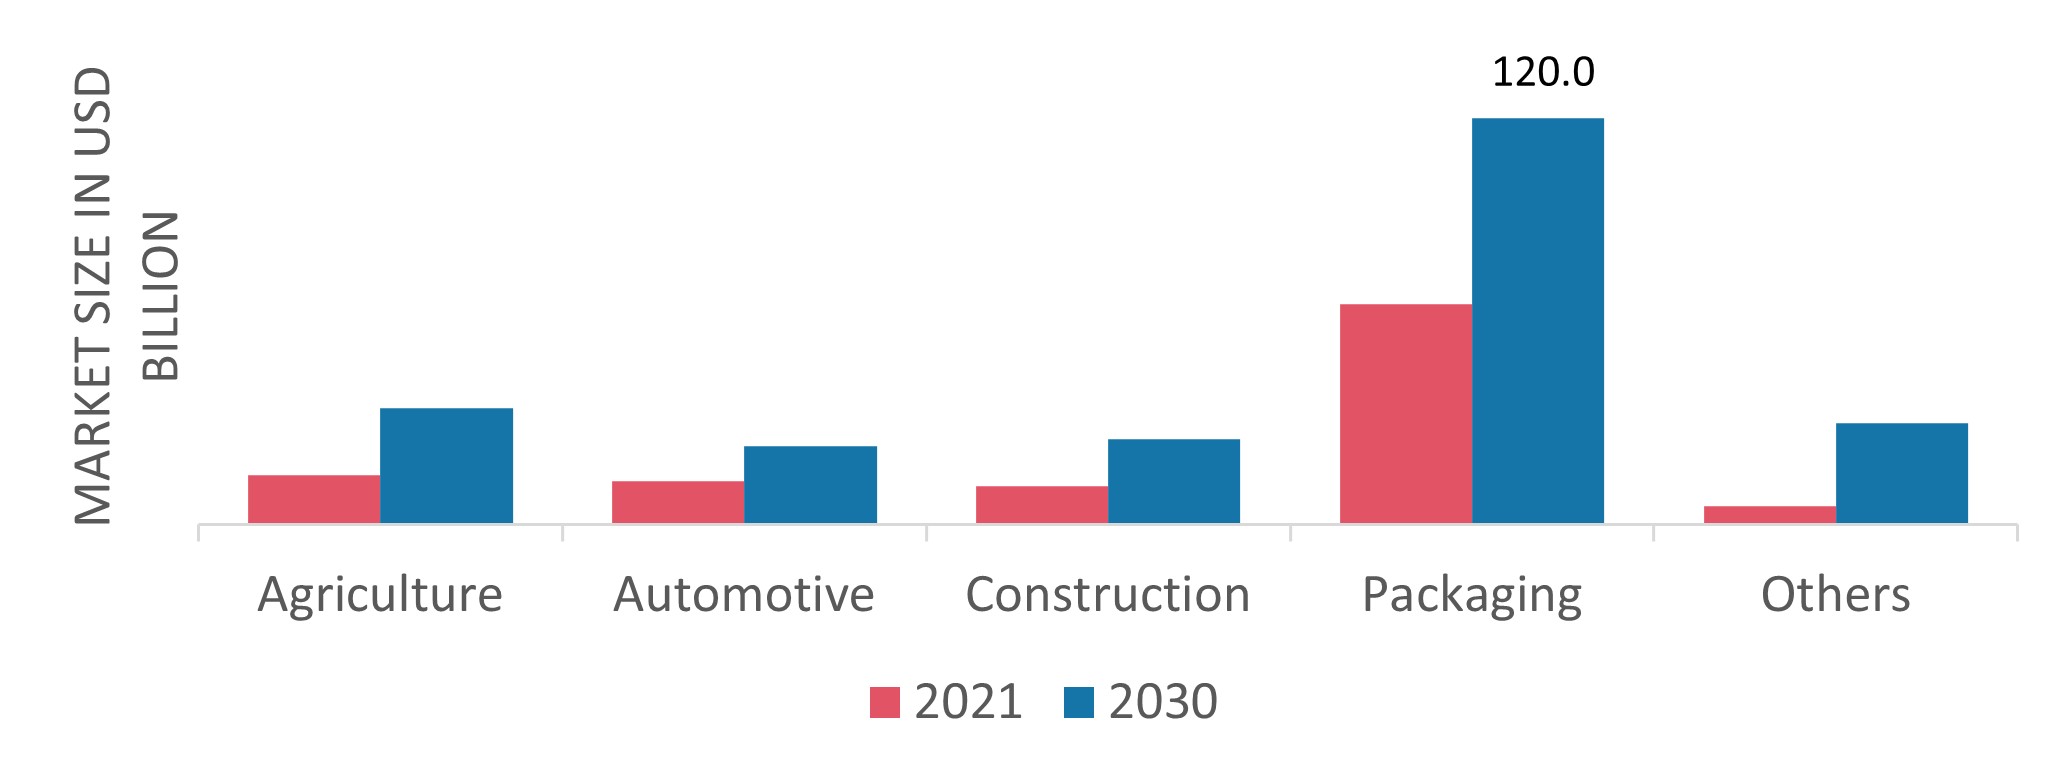 Polypropylene Market, by Surgery, 2021& 2030 (USD Billion)